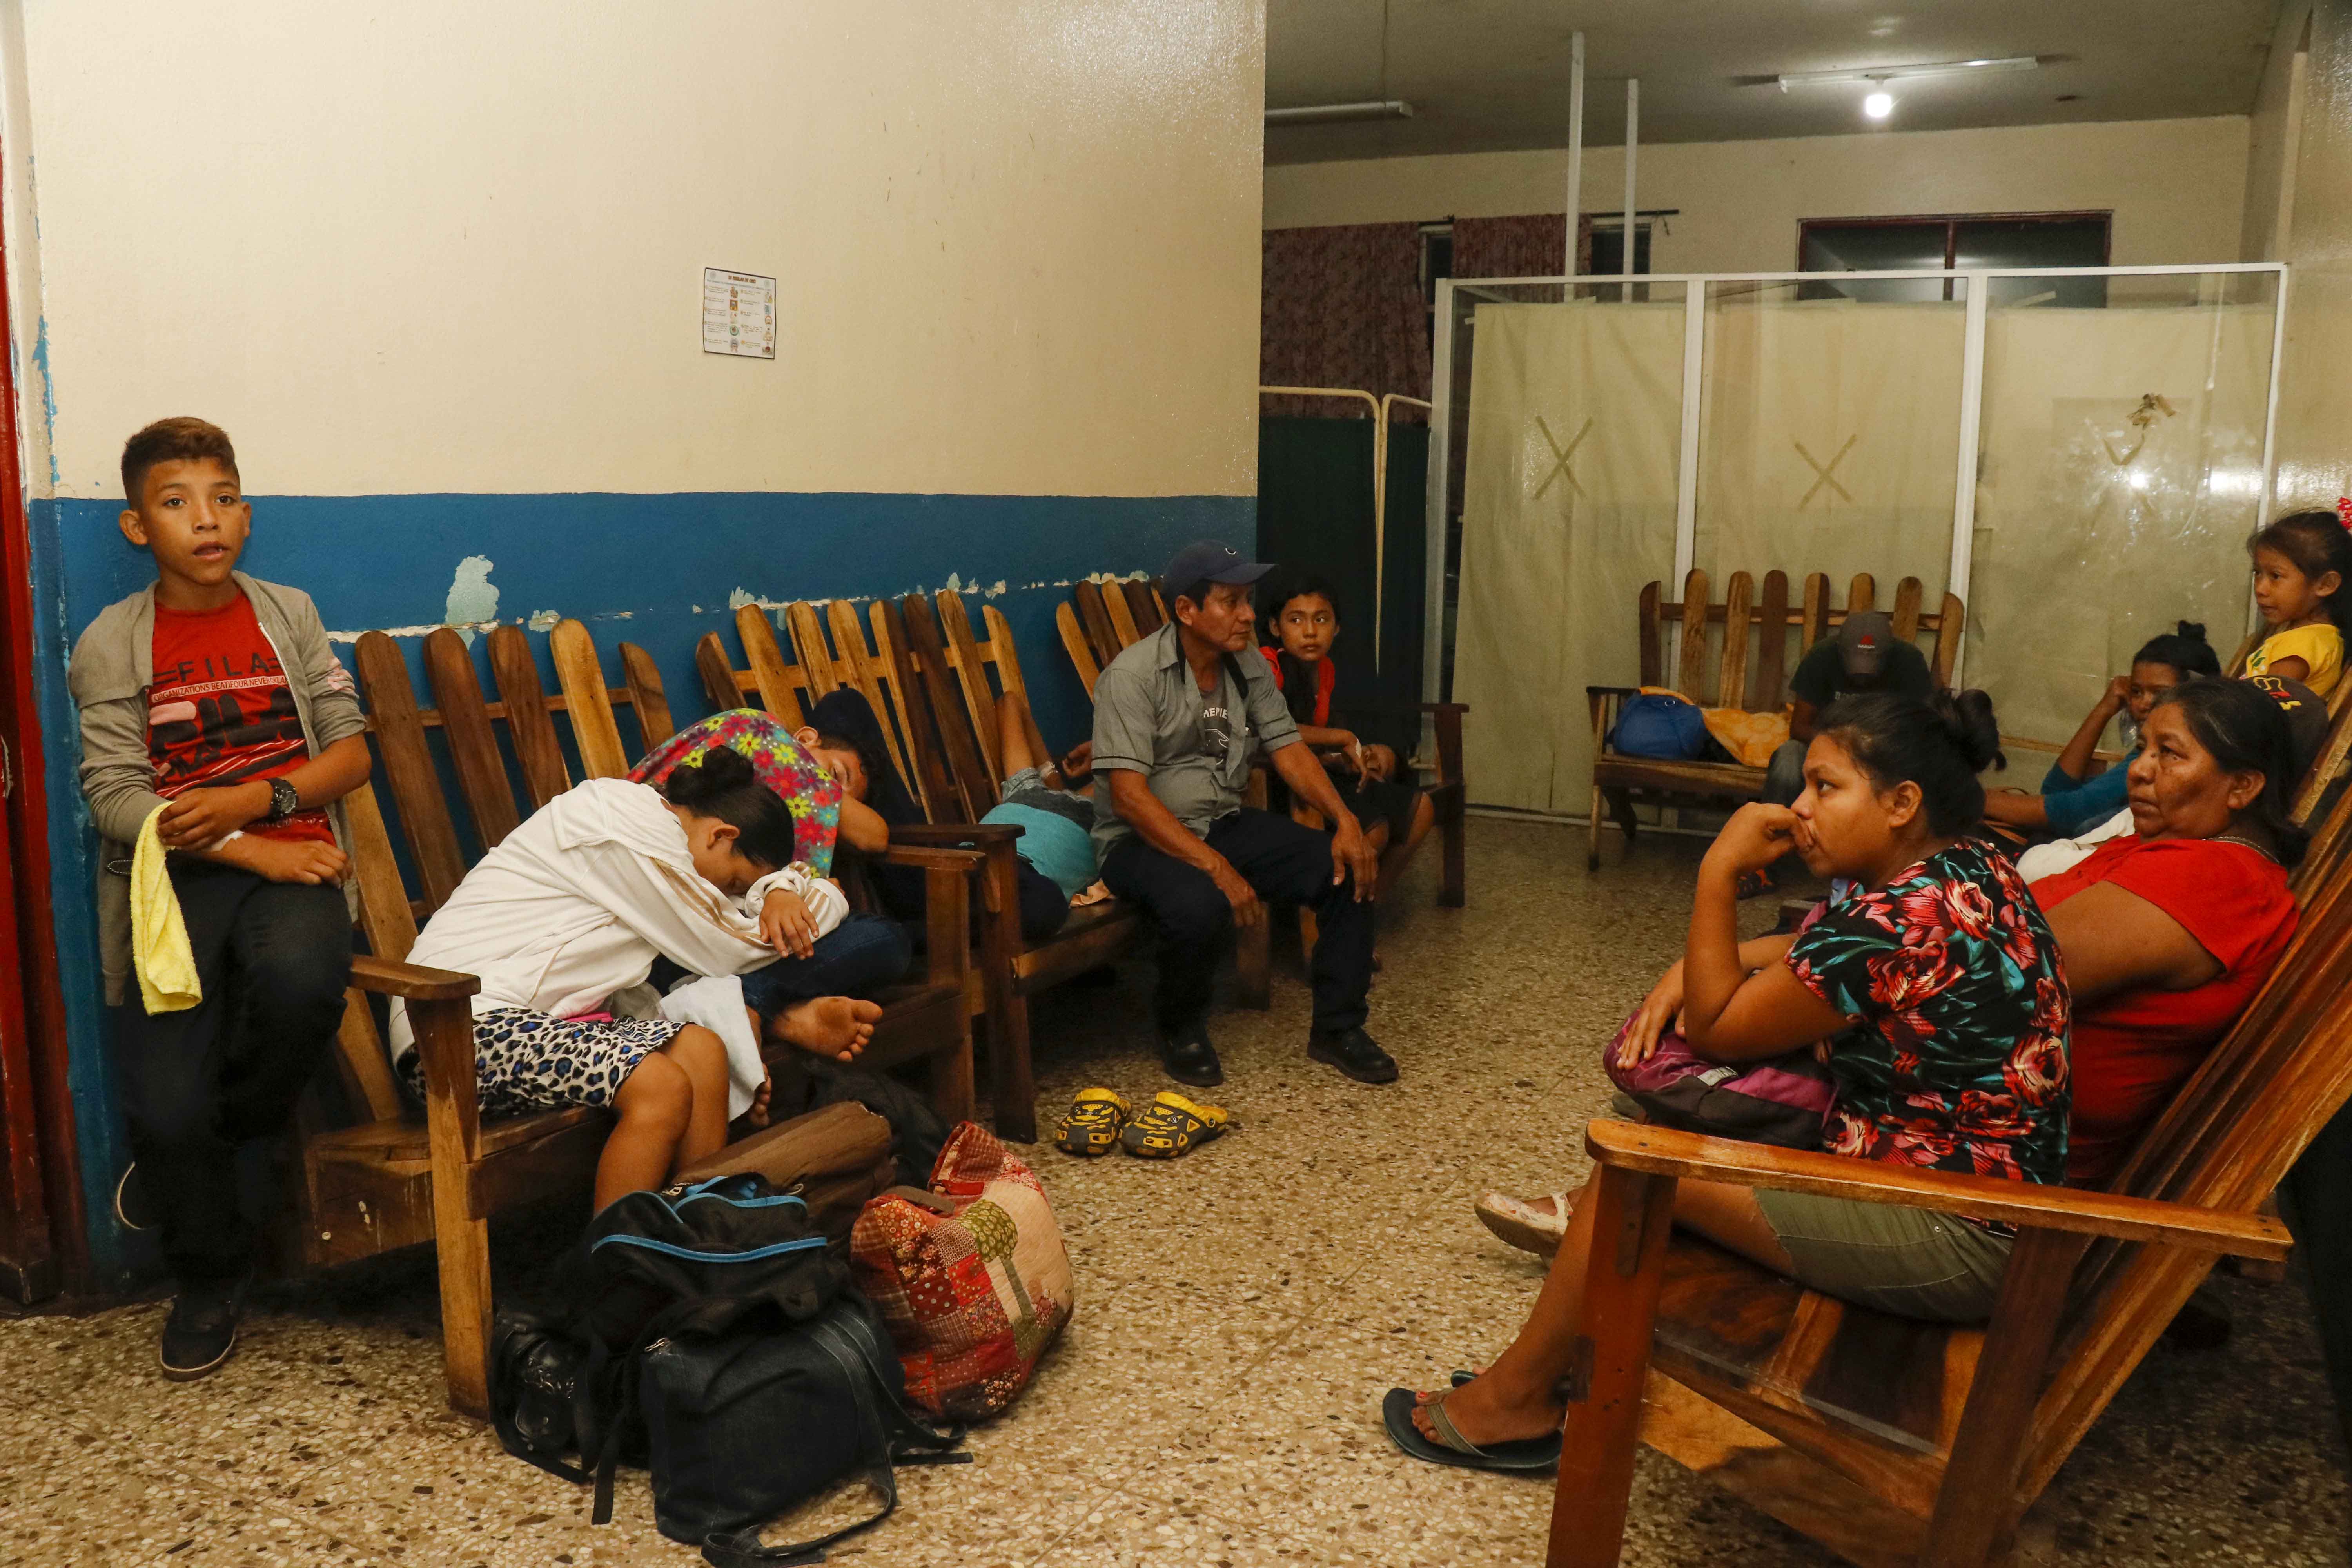 81 integrantes de una iglesia evangélica en Champerico, Retalhuleu, se intoxicaron al ingerir comida posiblemente en mal estado. (Foto Prensa Libre: Rolando Miranda)